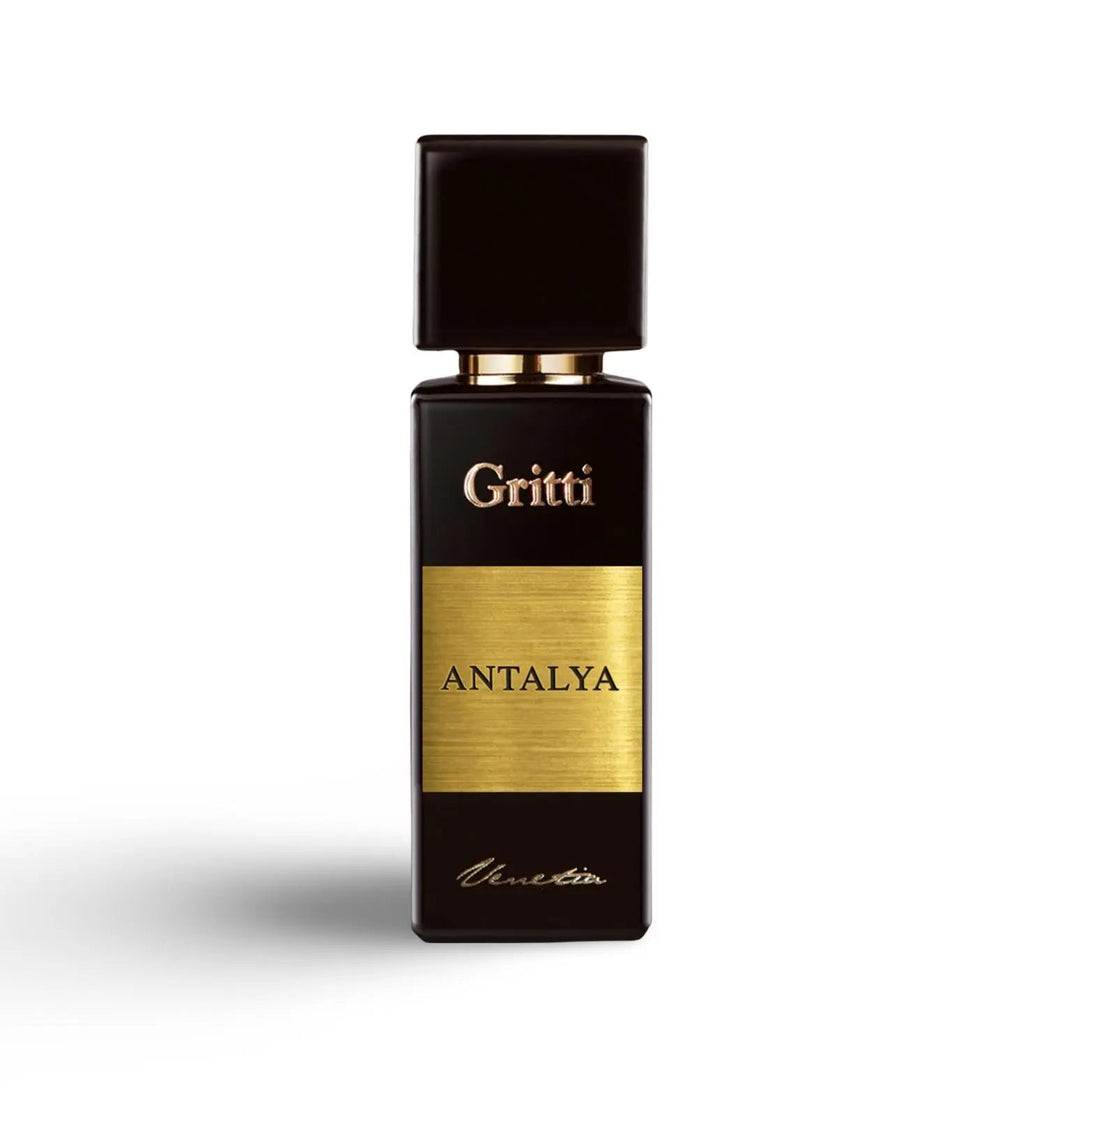 Antalaya eau de parfum Gritti 100ml